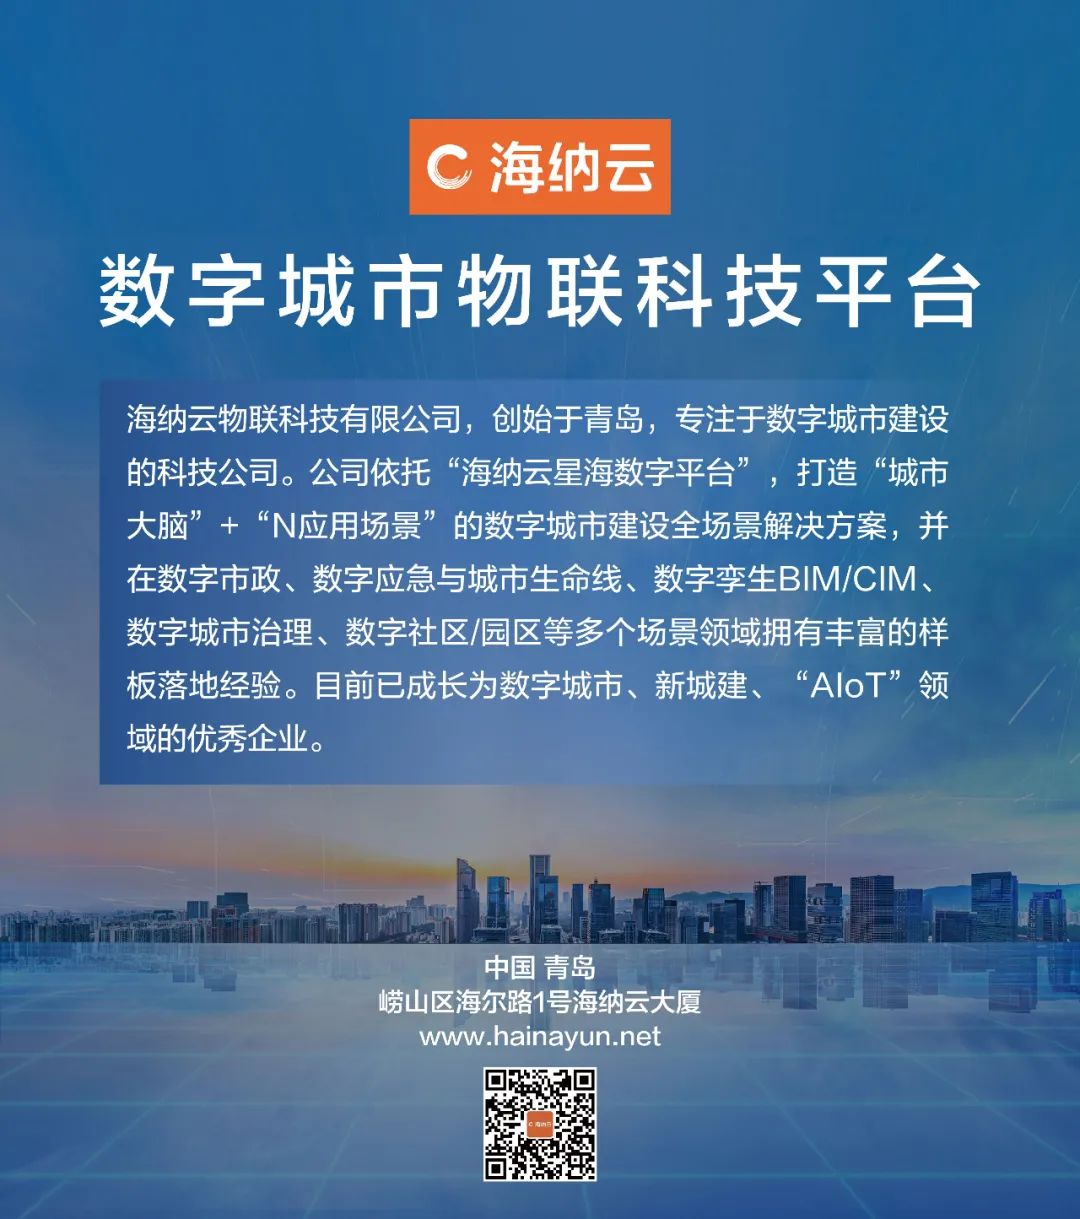 中国首个，海纳云荣获BSI BIM Kitemark 风筝标志认证证书